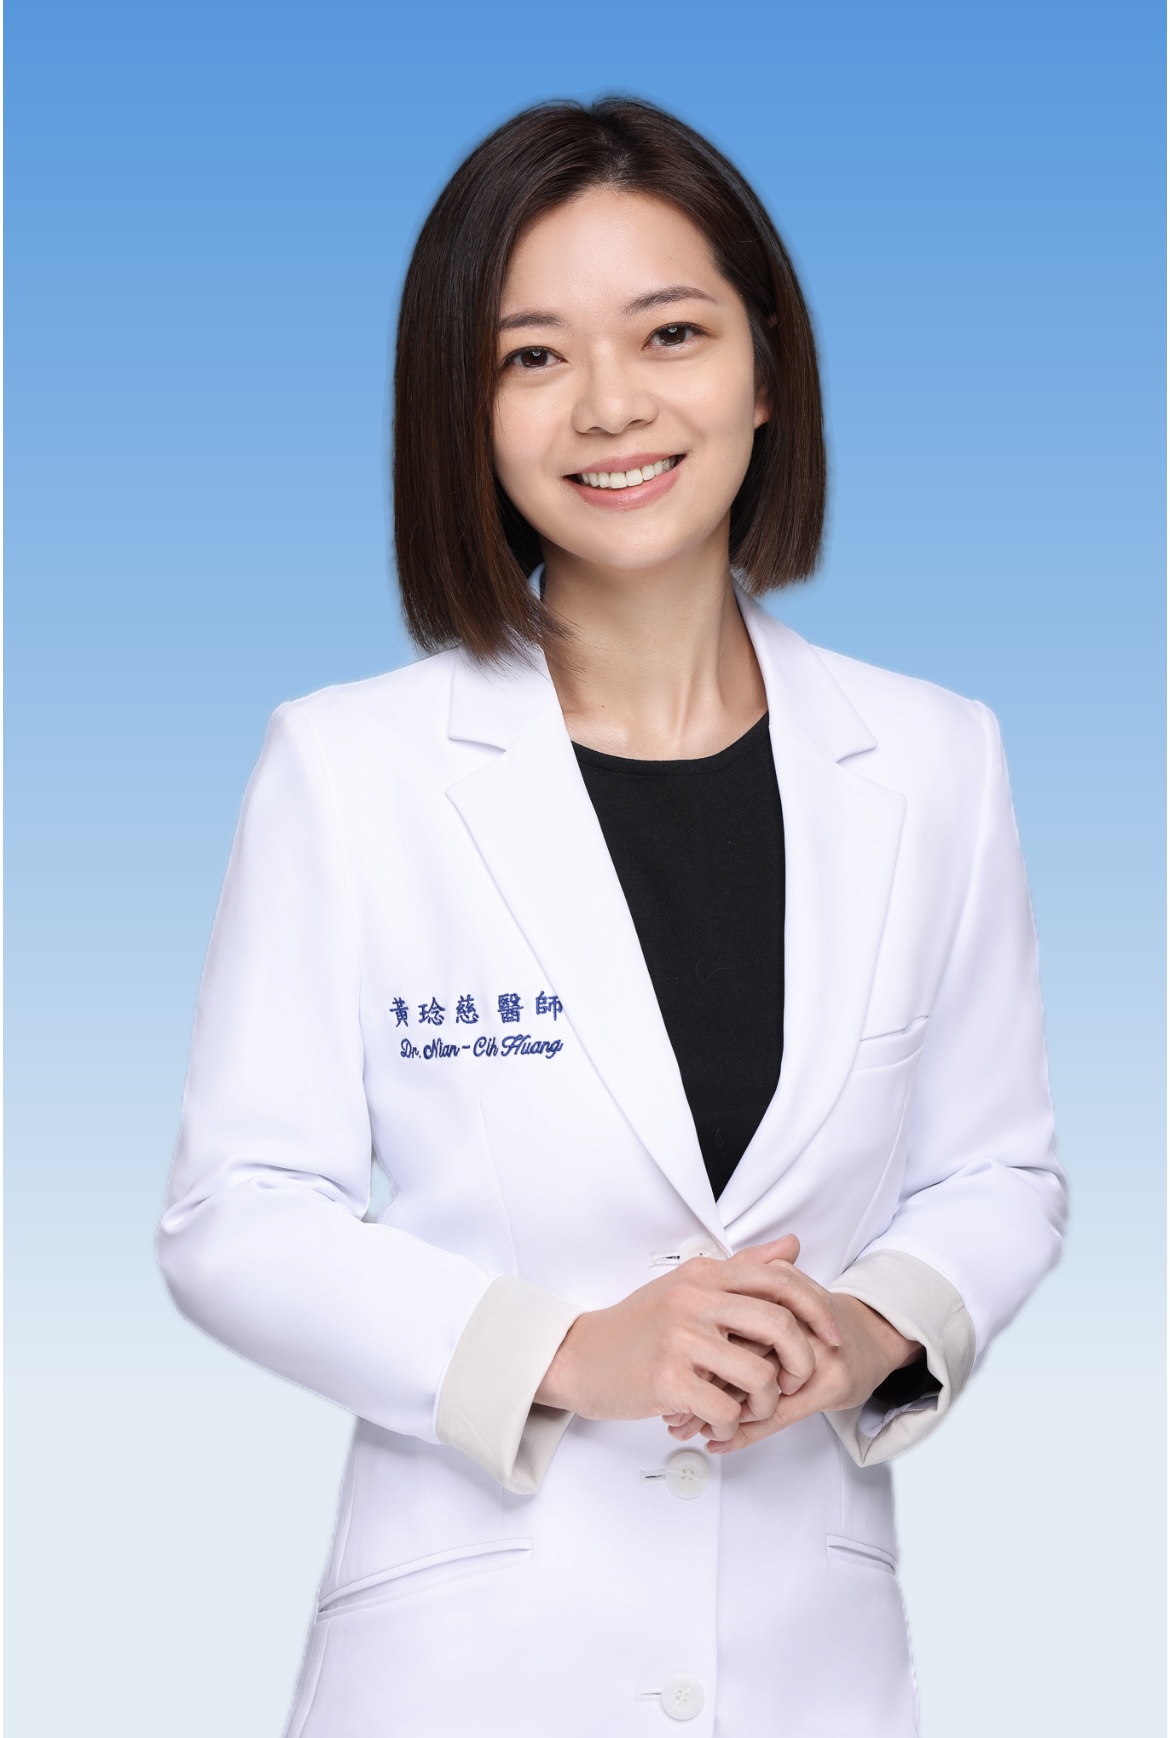 Nian-Cih Huang Attending Physician